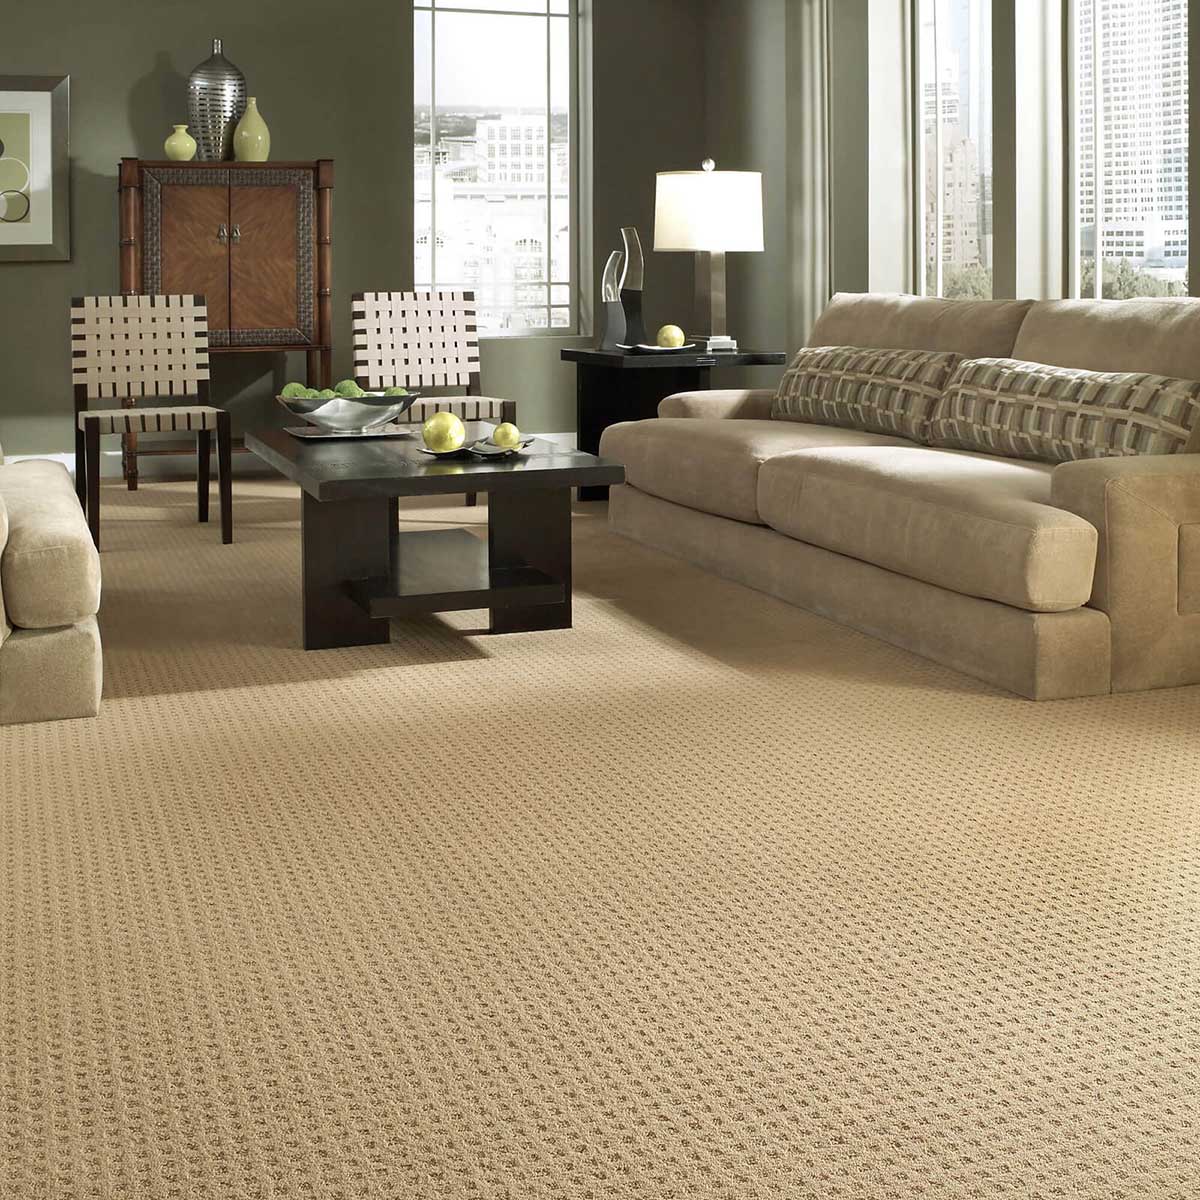 Living room Carpet | CarpetsPlus of Steamboat Springs